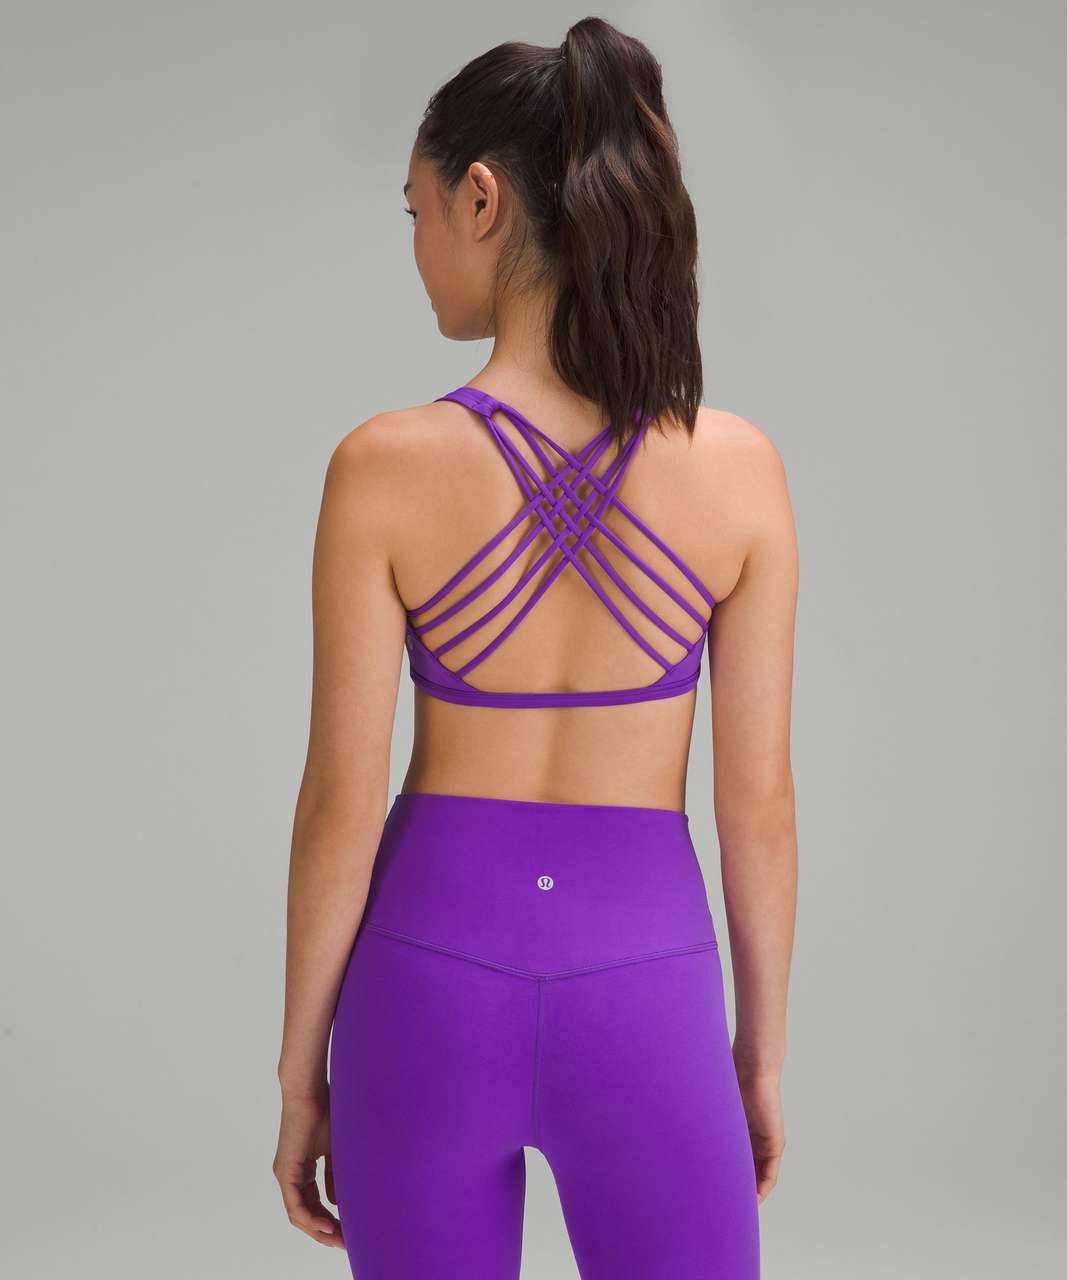 lululemon athletica, Intimates & Sleepwear, Purple Lululemon Sports Bra  Size 4 Small